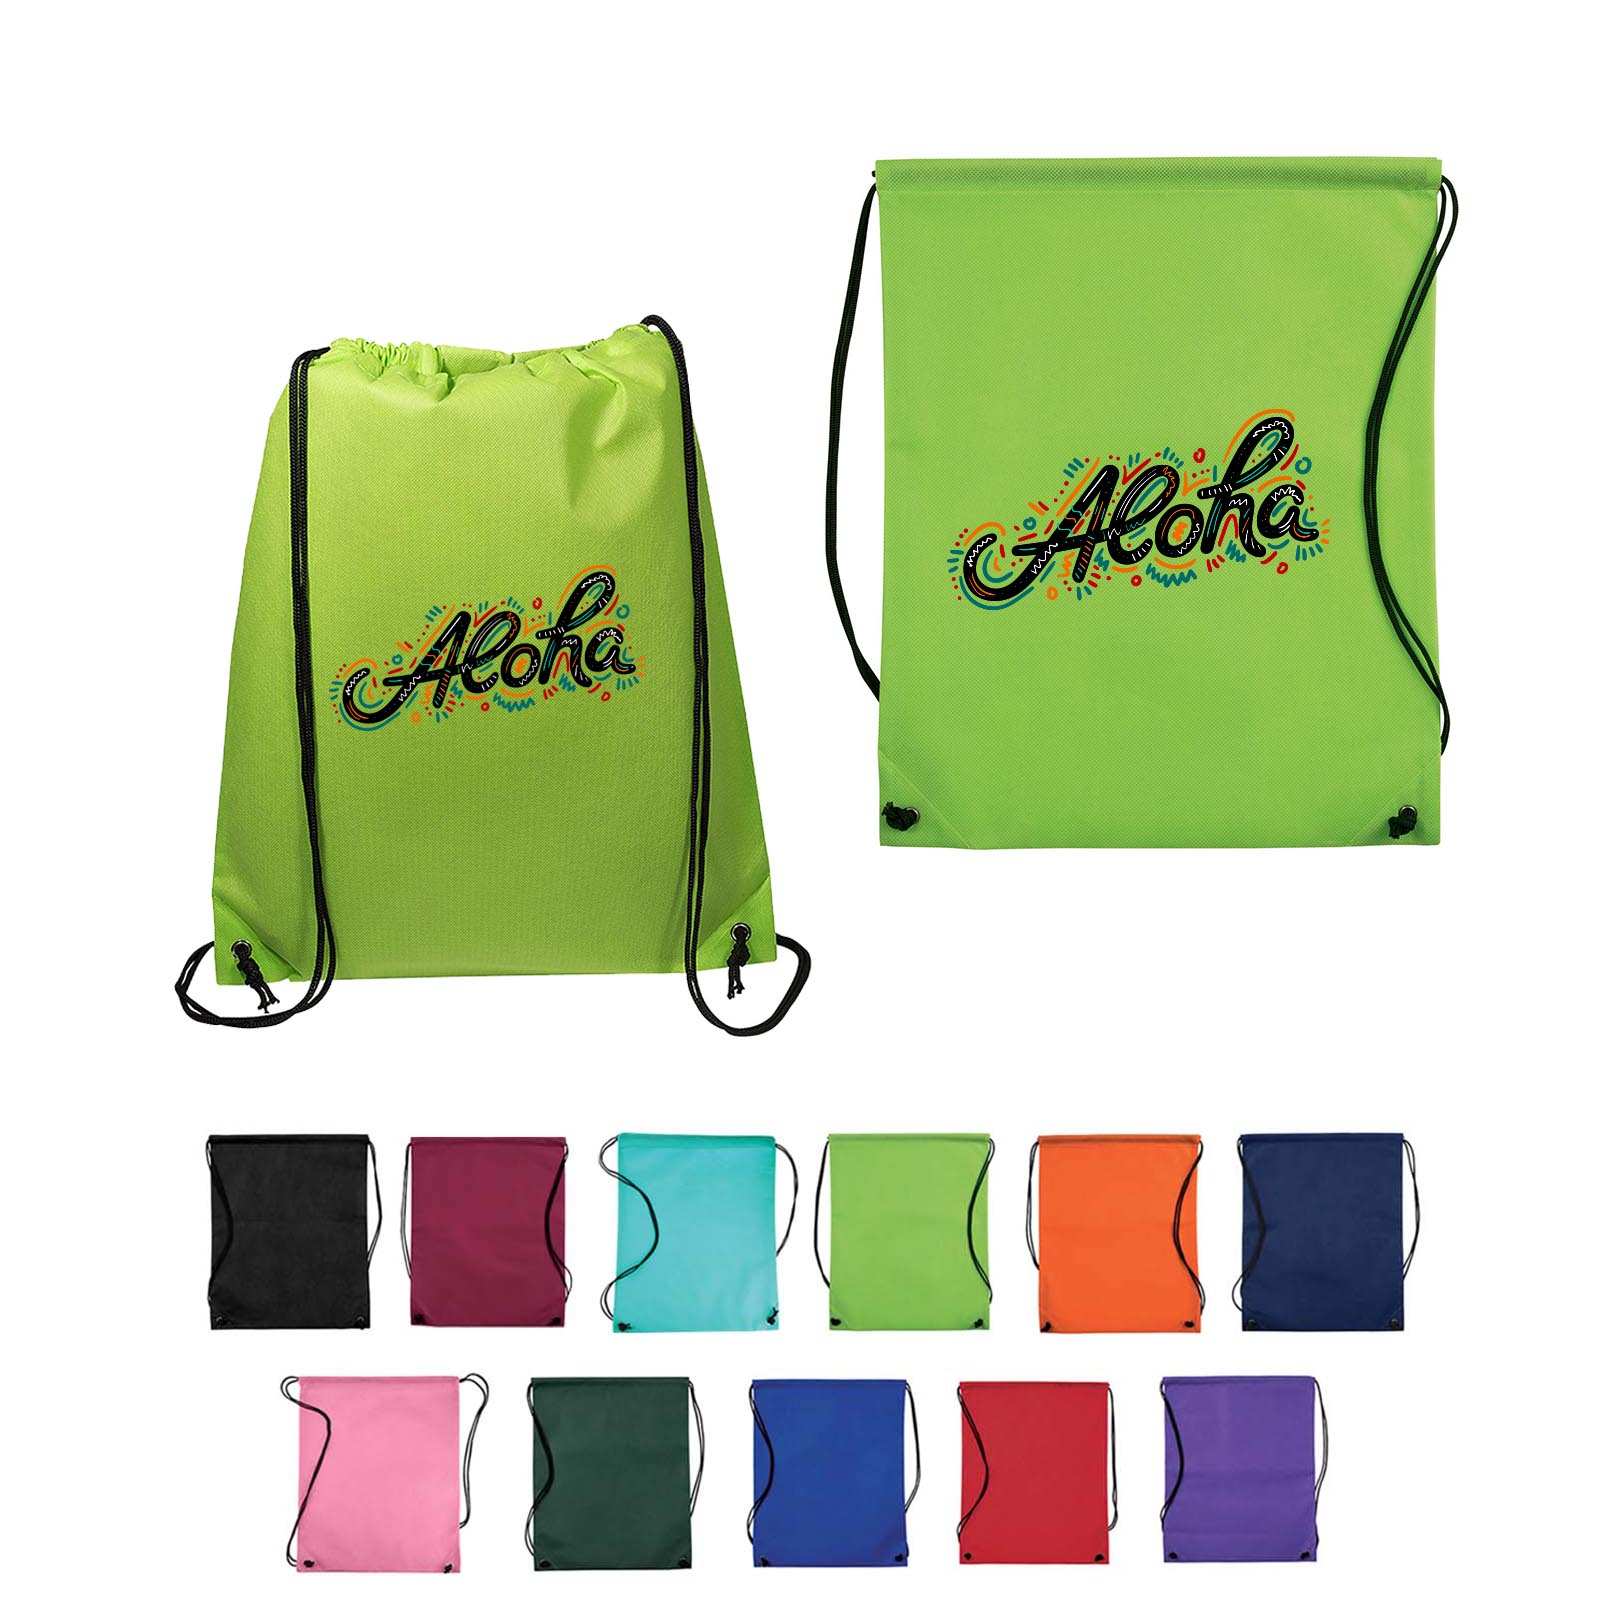 Full Color Non Woven Drawstring Bag 